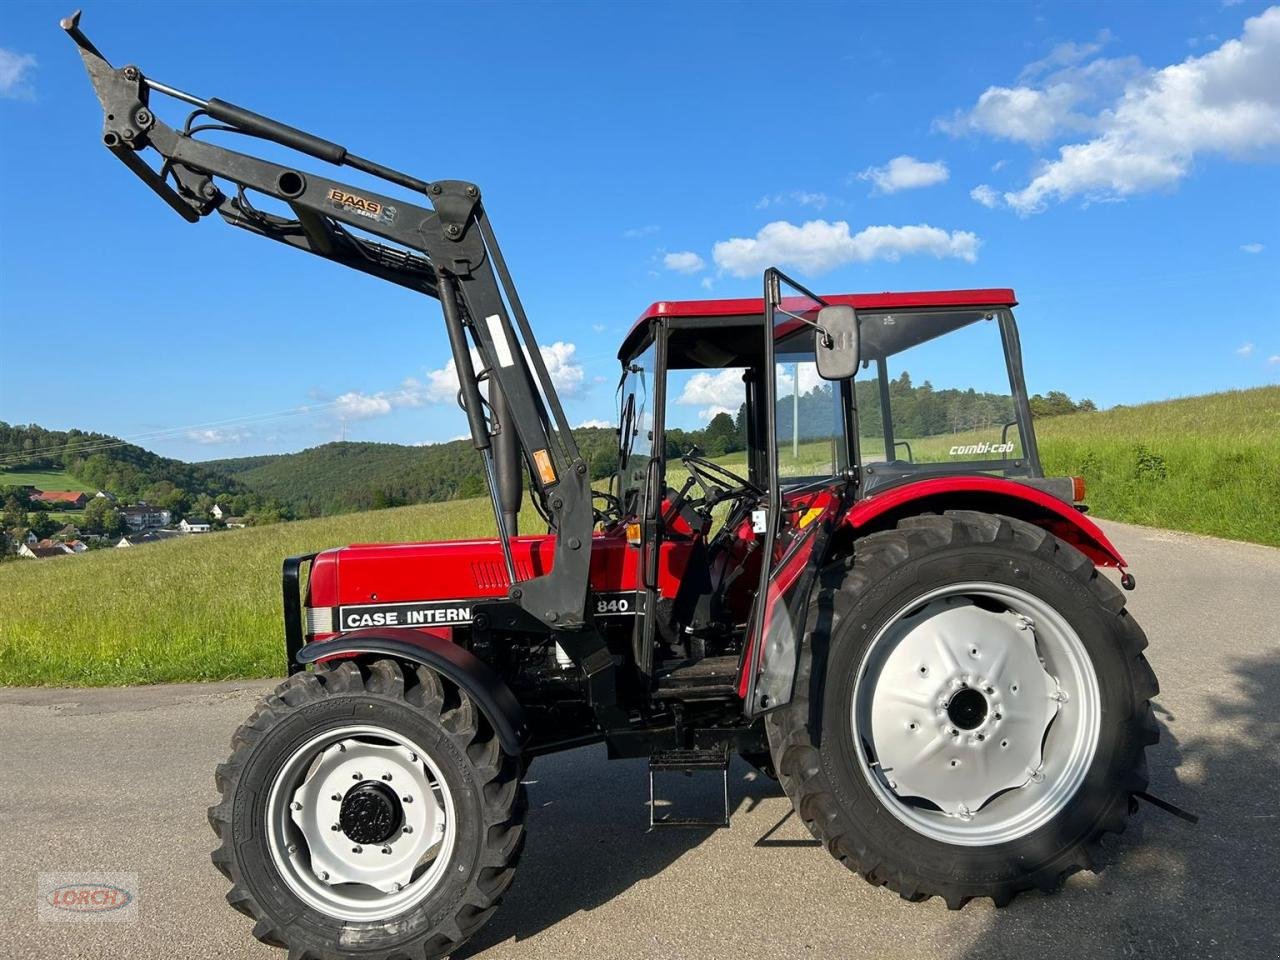 Traktor des Typs Case IH IHC 840 Allrad, Gebrauchtmaschine in Trochtelfingen (Bild 1)